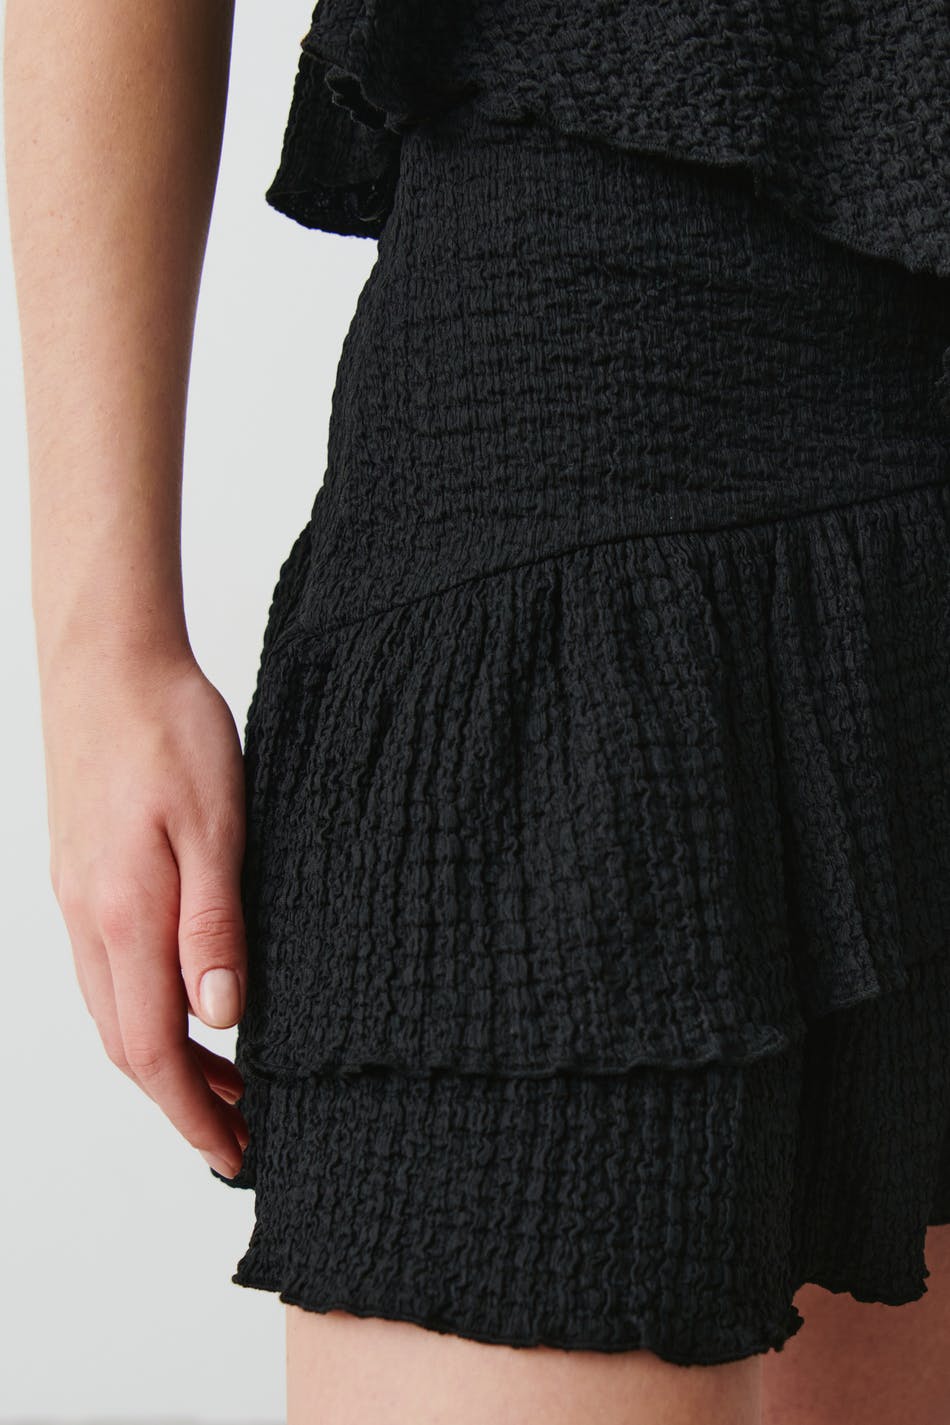 Details 131+ structured skirt super hot